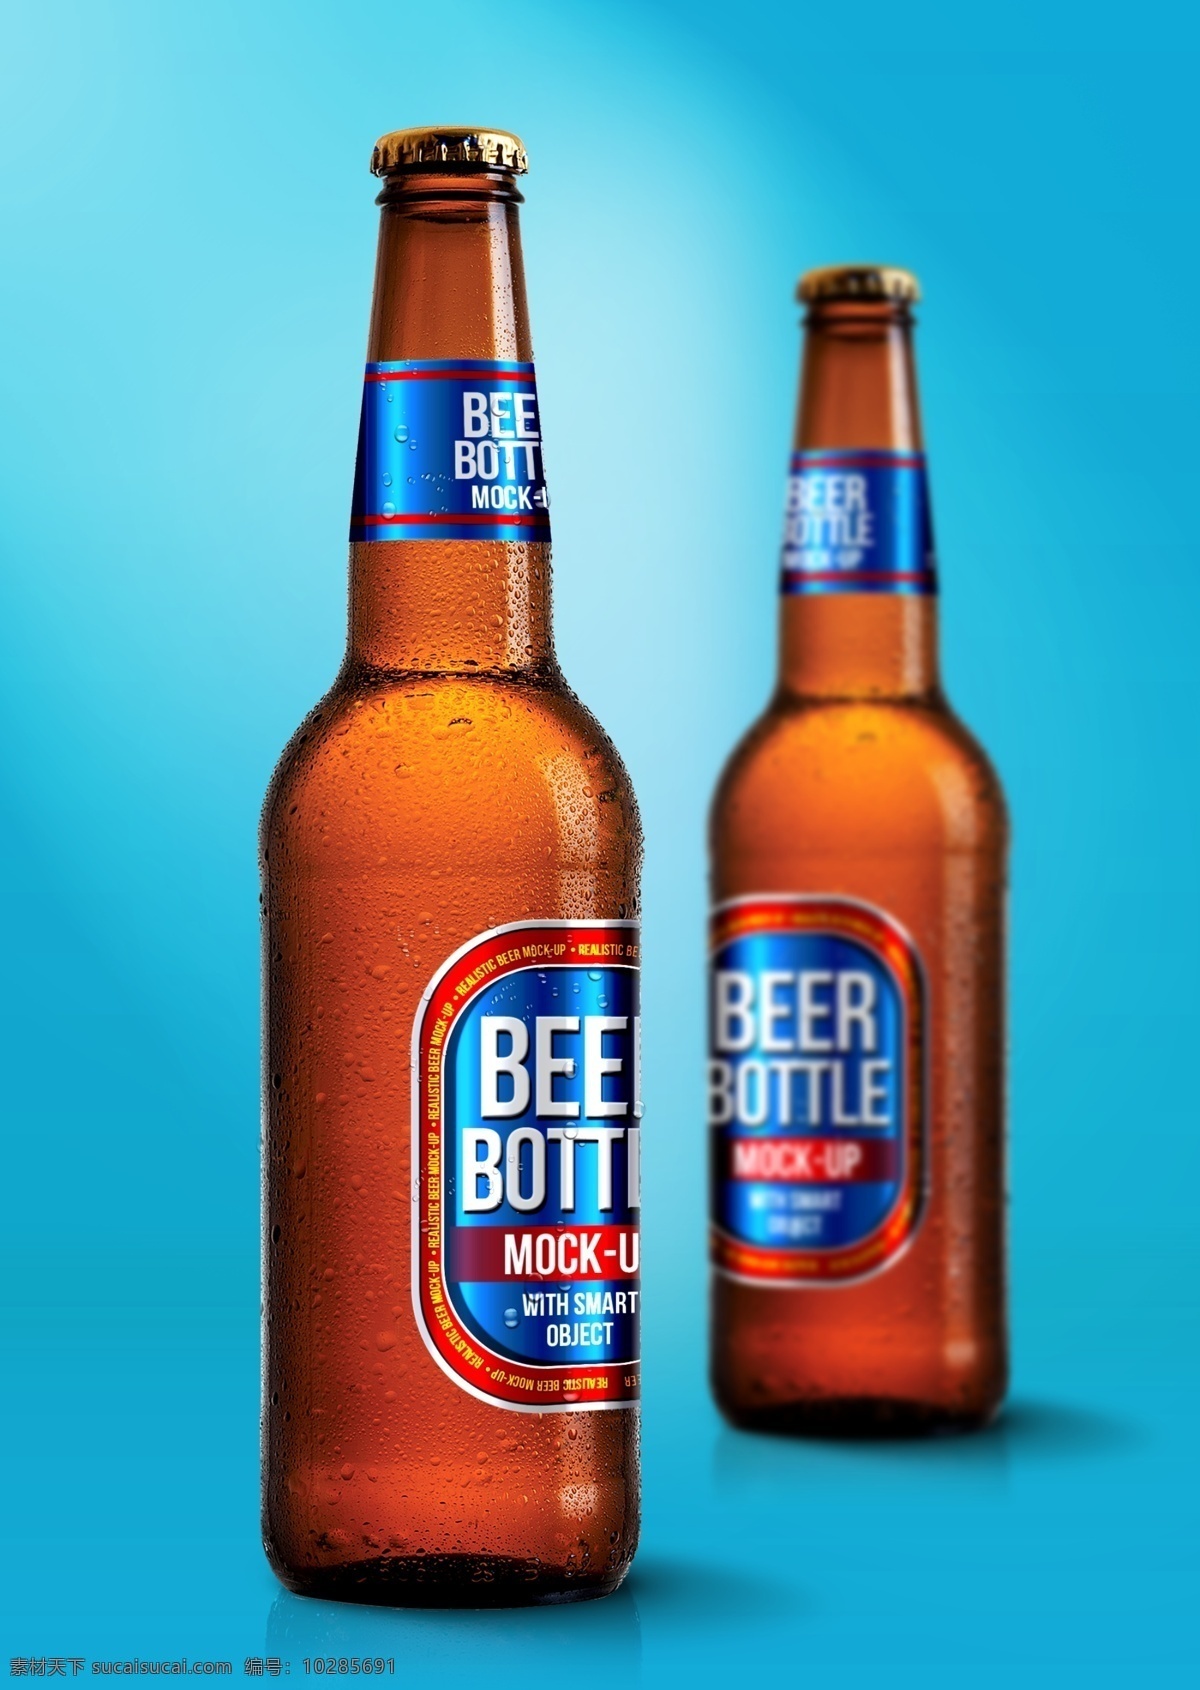 啤酒瓶贴 智能对象 vi提案神器 样机 啤酒 瓶贴 包装 模板 psd分层 青色 天蓝色